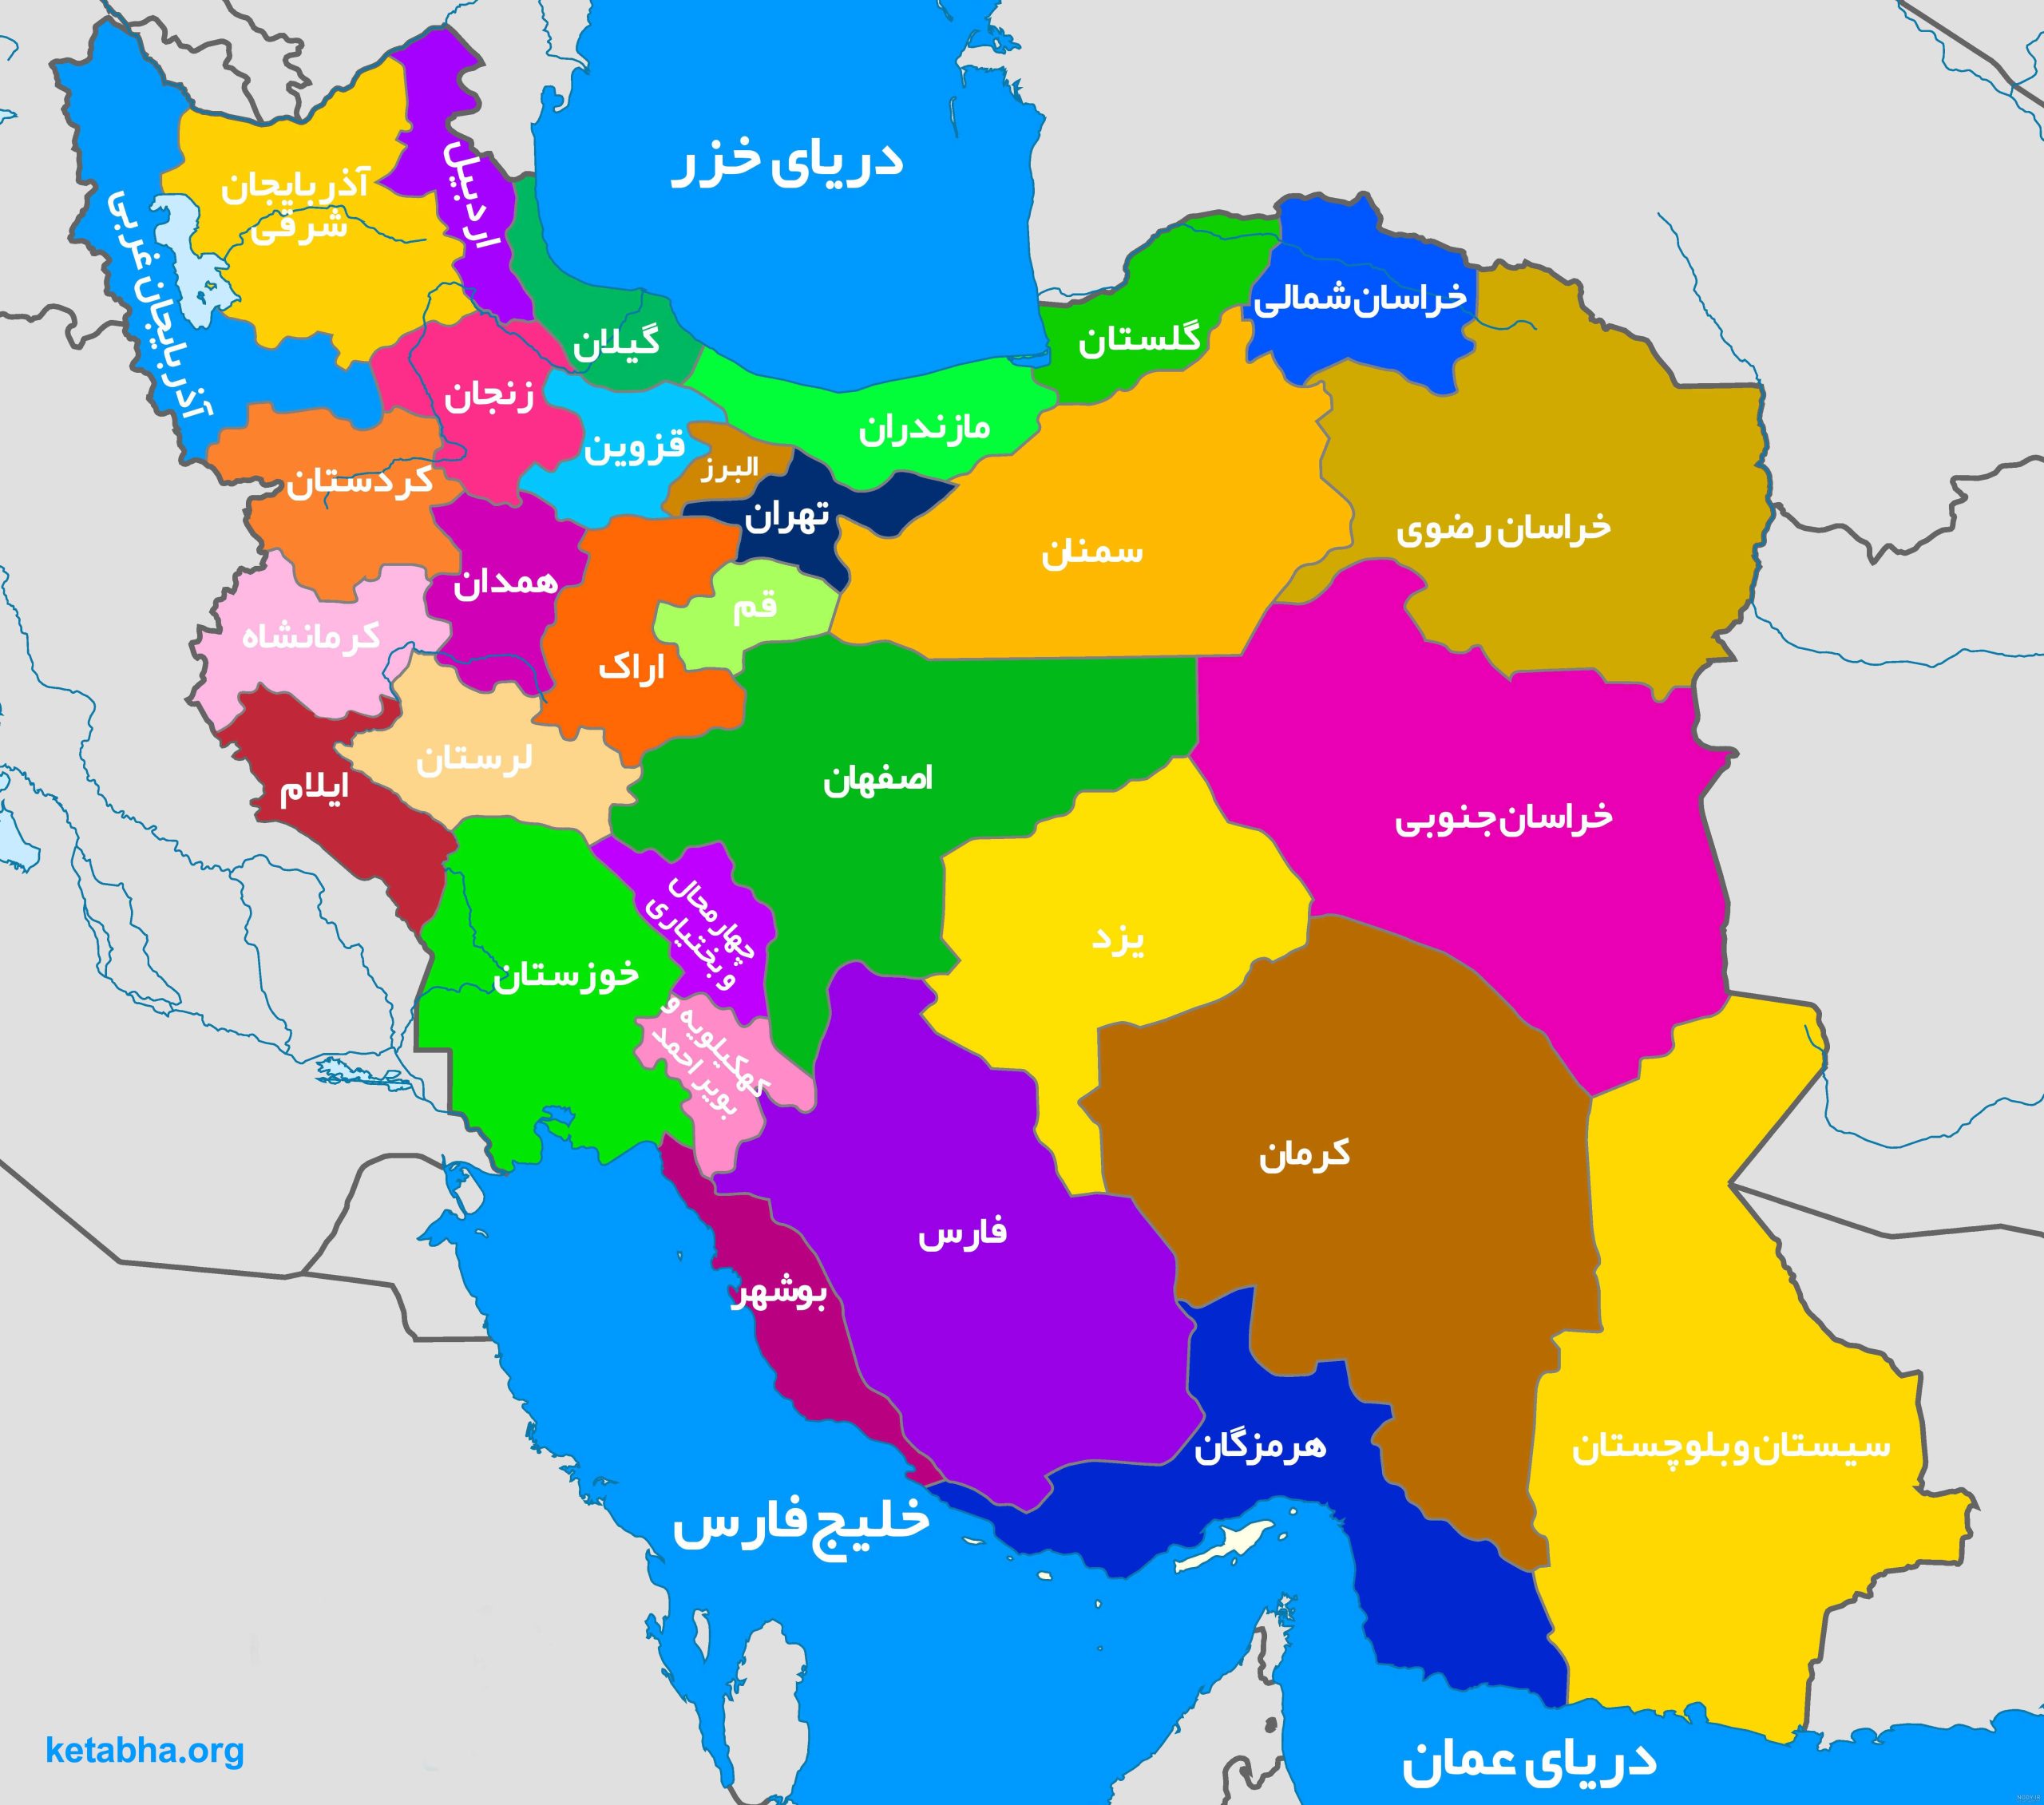 دانلود رایگان نقشه ایران با کیفیت بالا